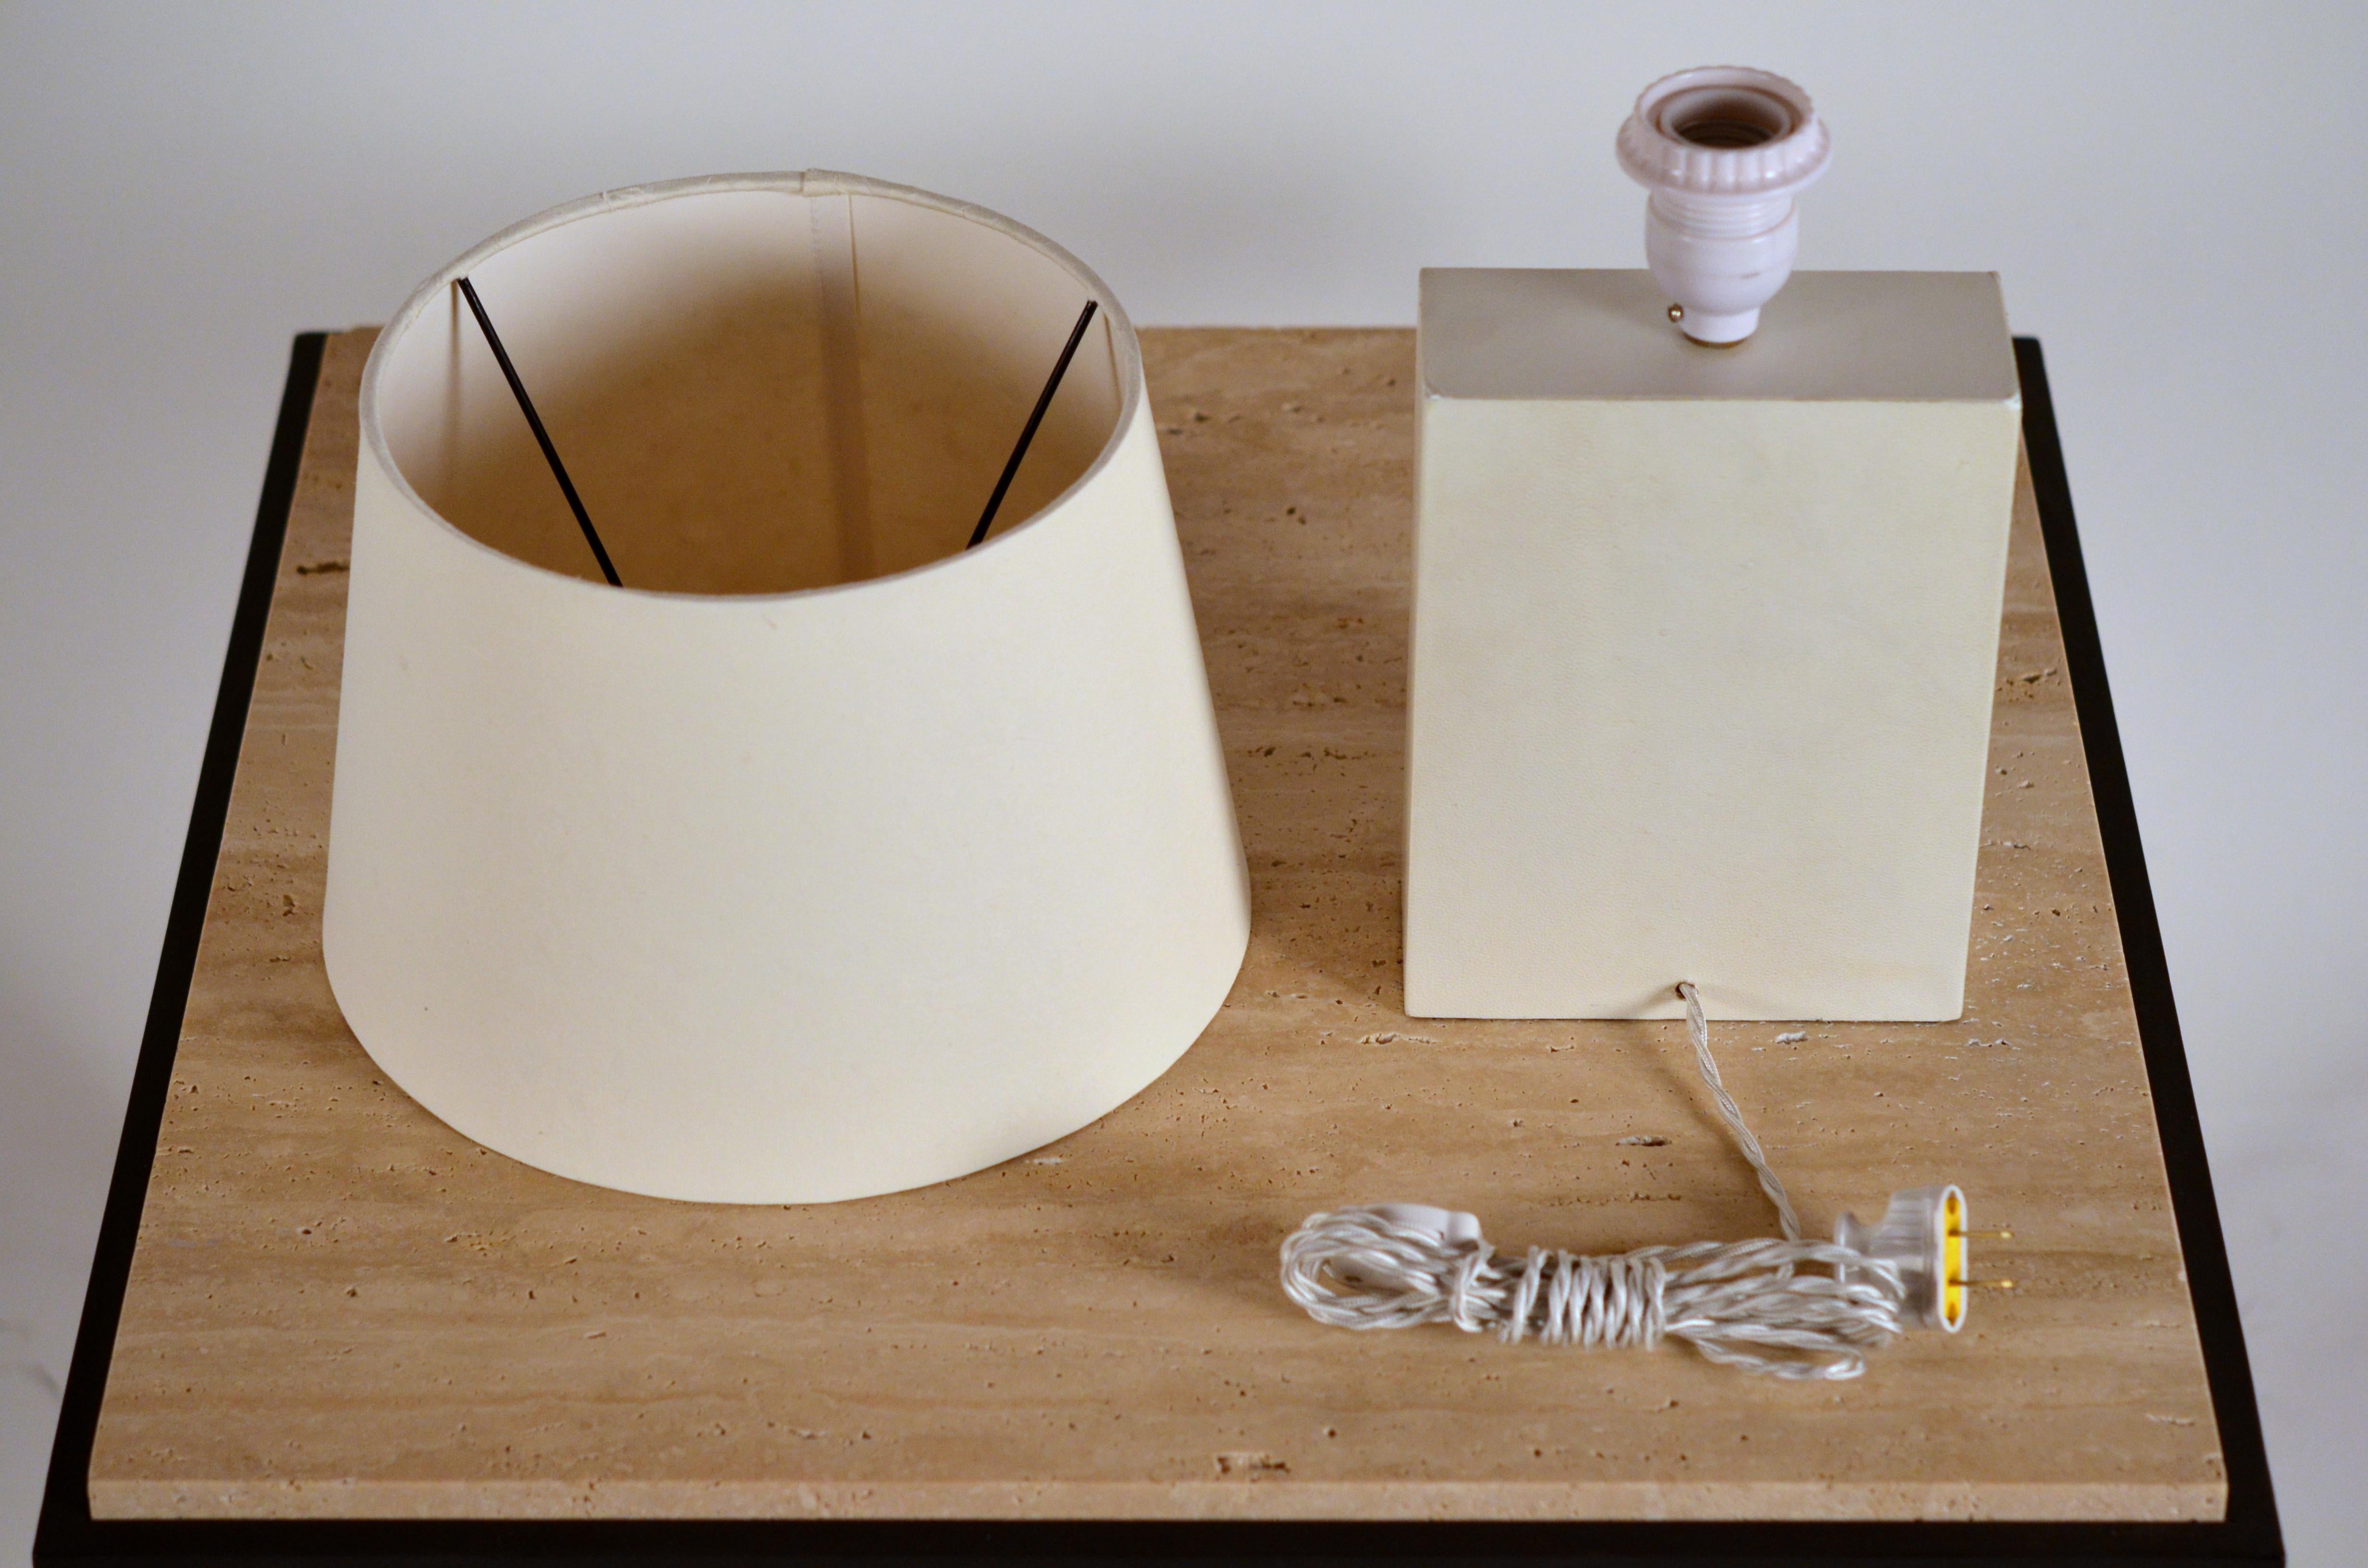 Appliqué Pair of 'Bloc' Parchment Lamps with Parchment Paper Shades by Design Frères For Sale